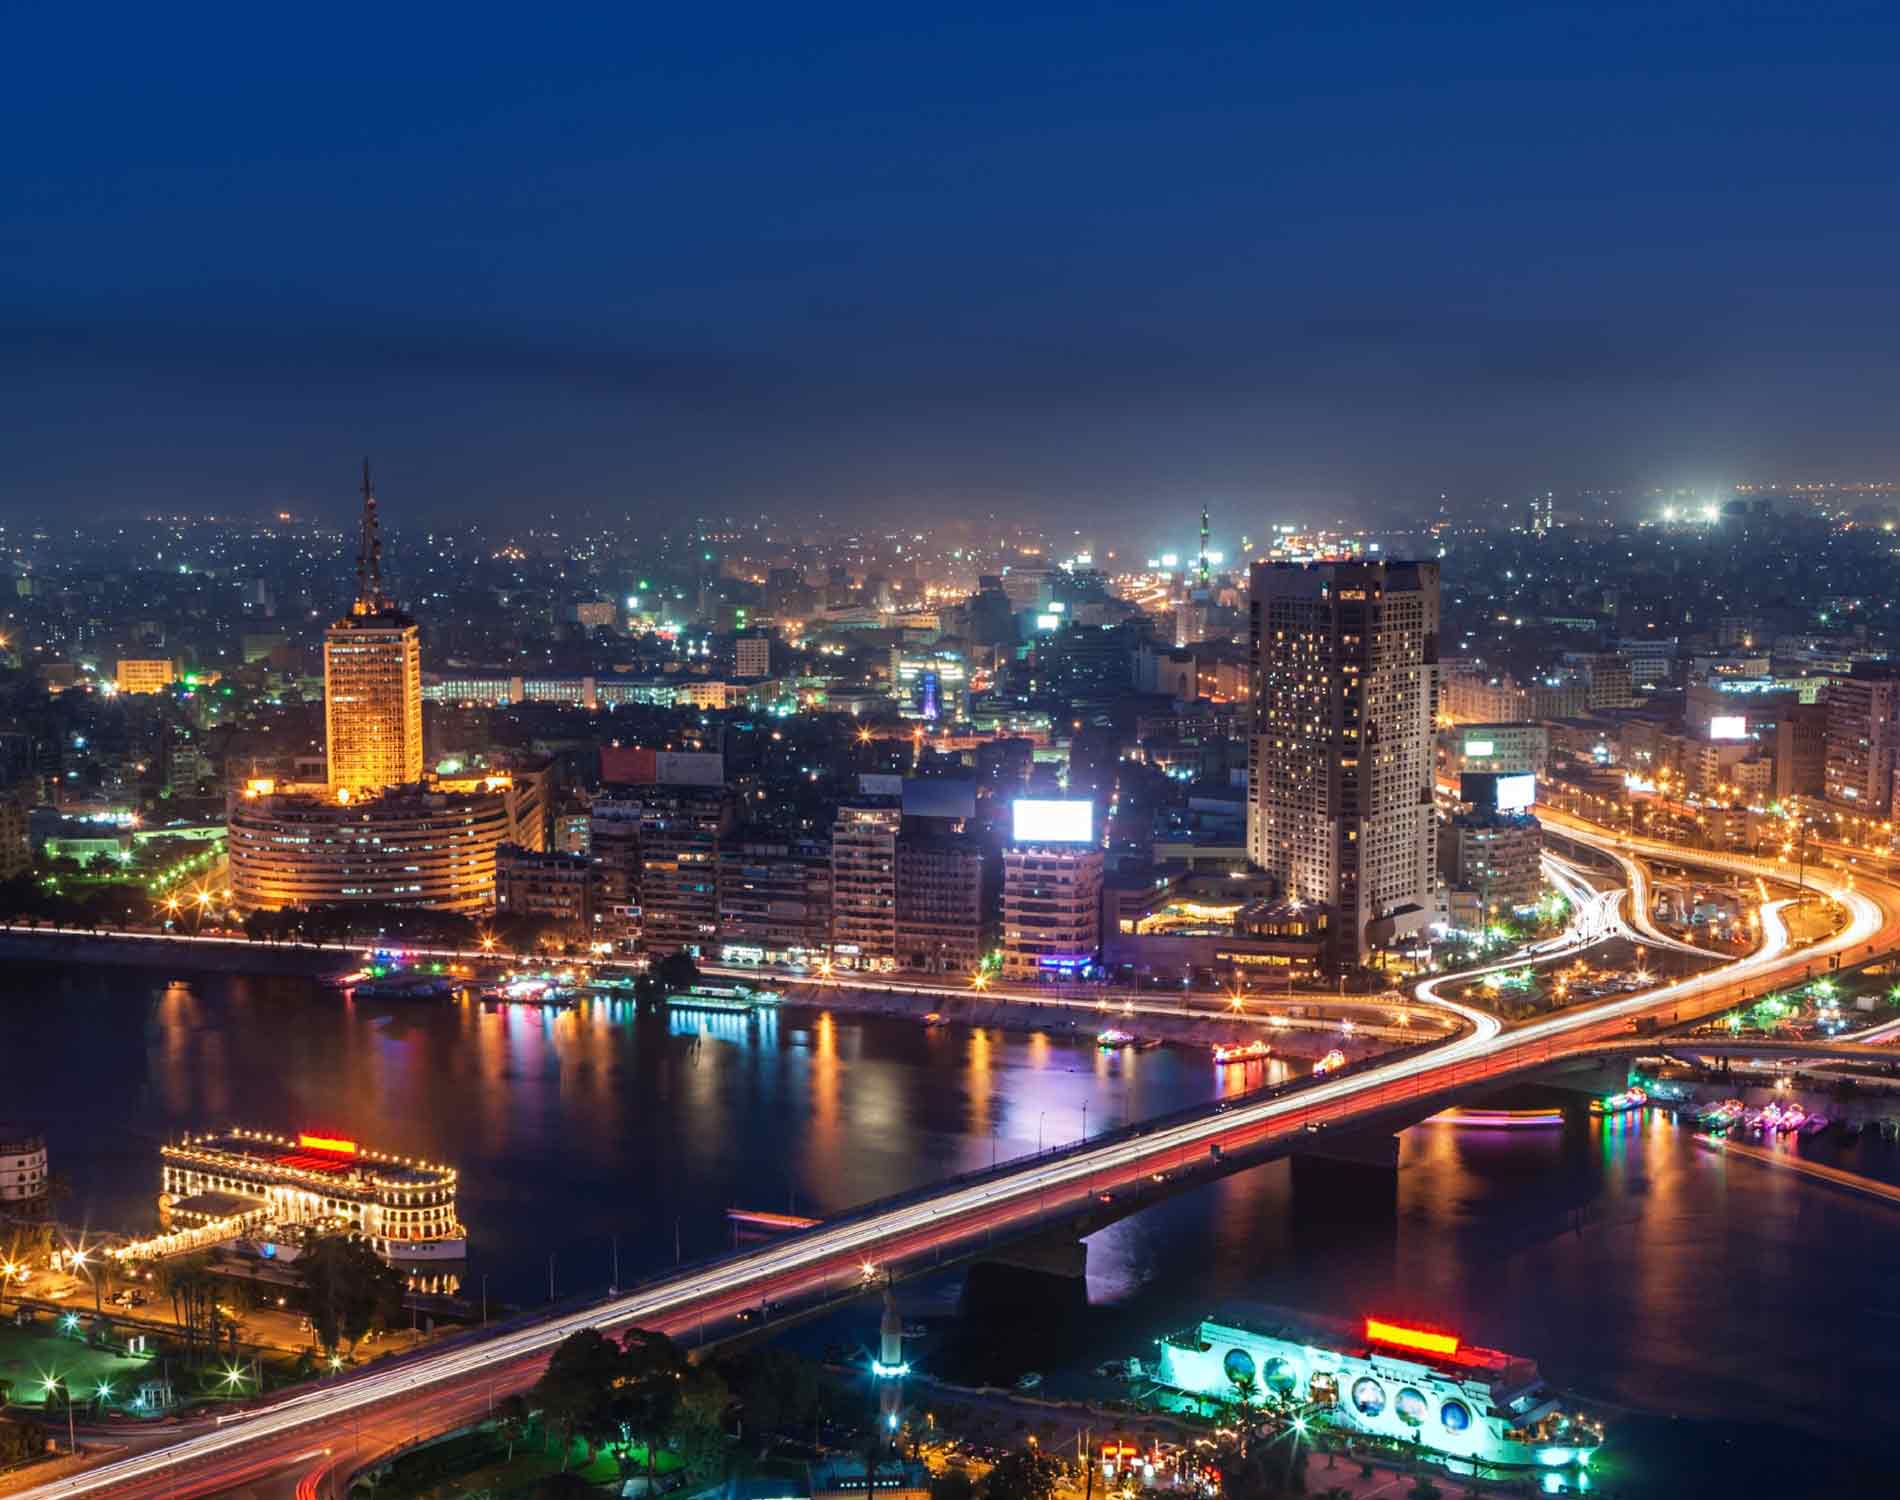 Cairo night photo